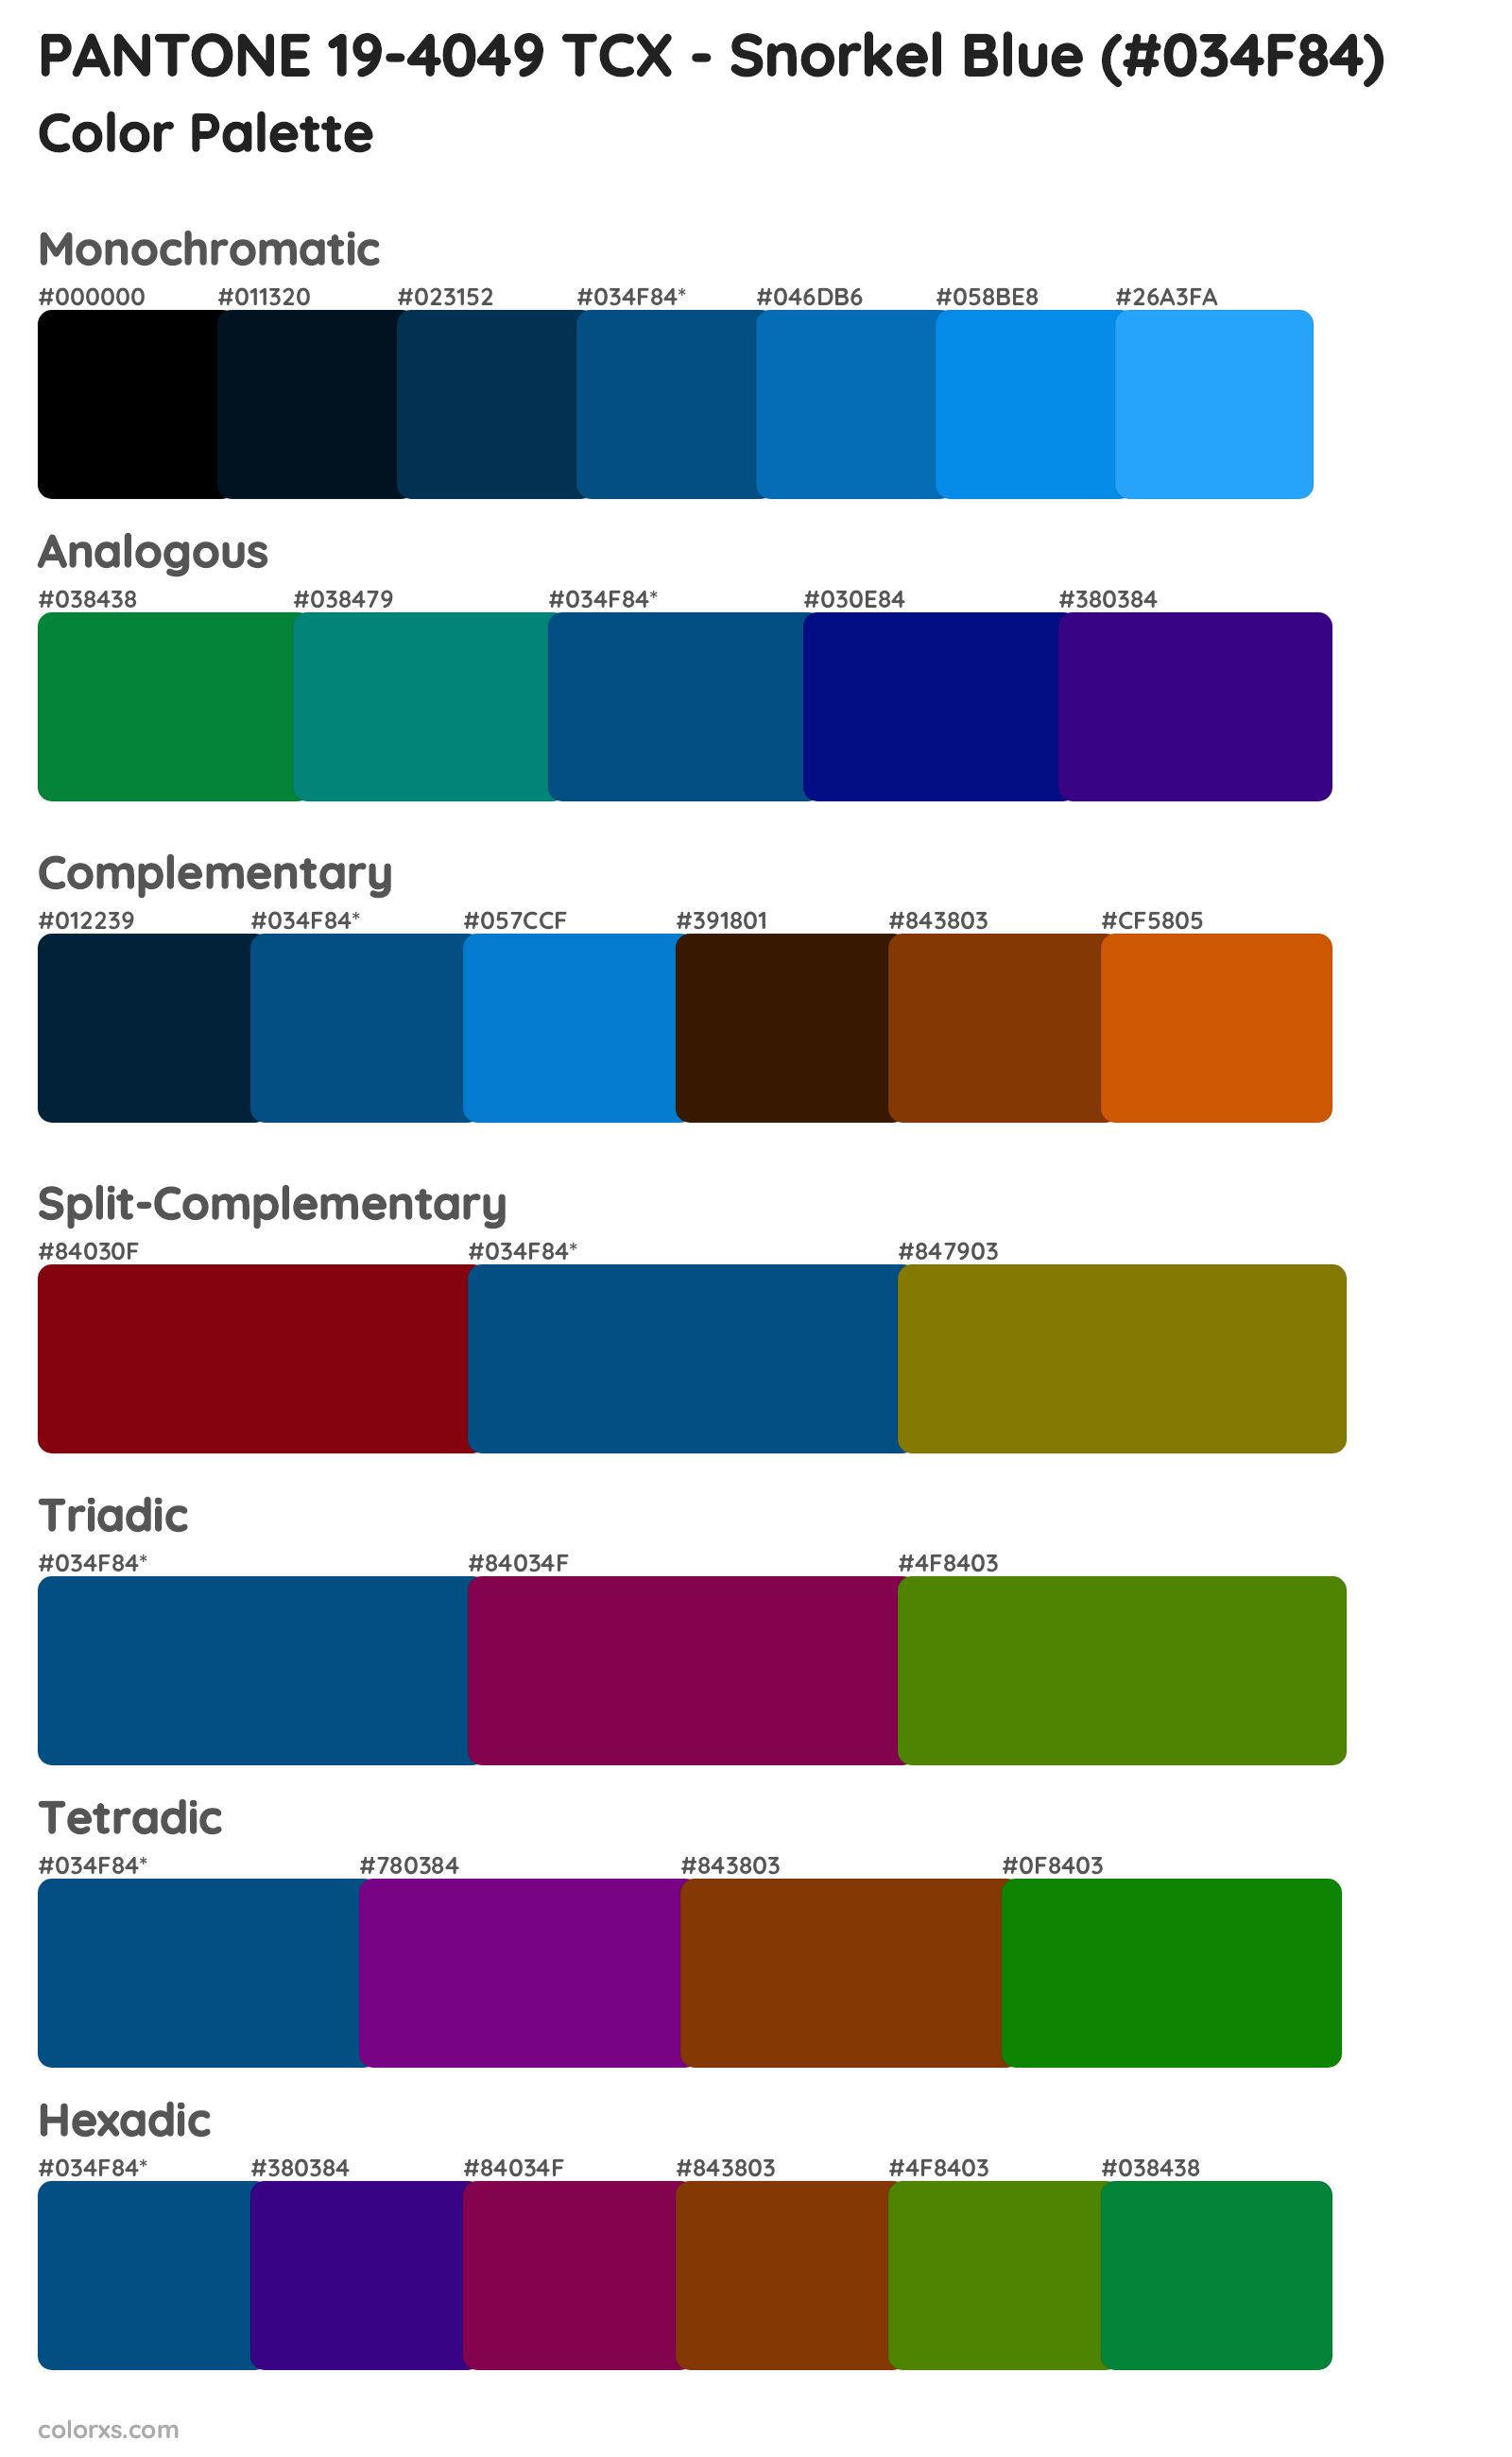 PANTONE 19-4049 TCX - Snorkel Blue Color Scheme Palettes